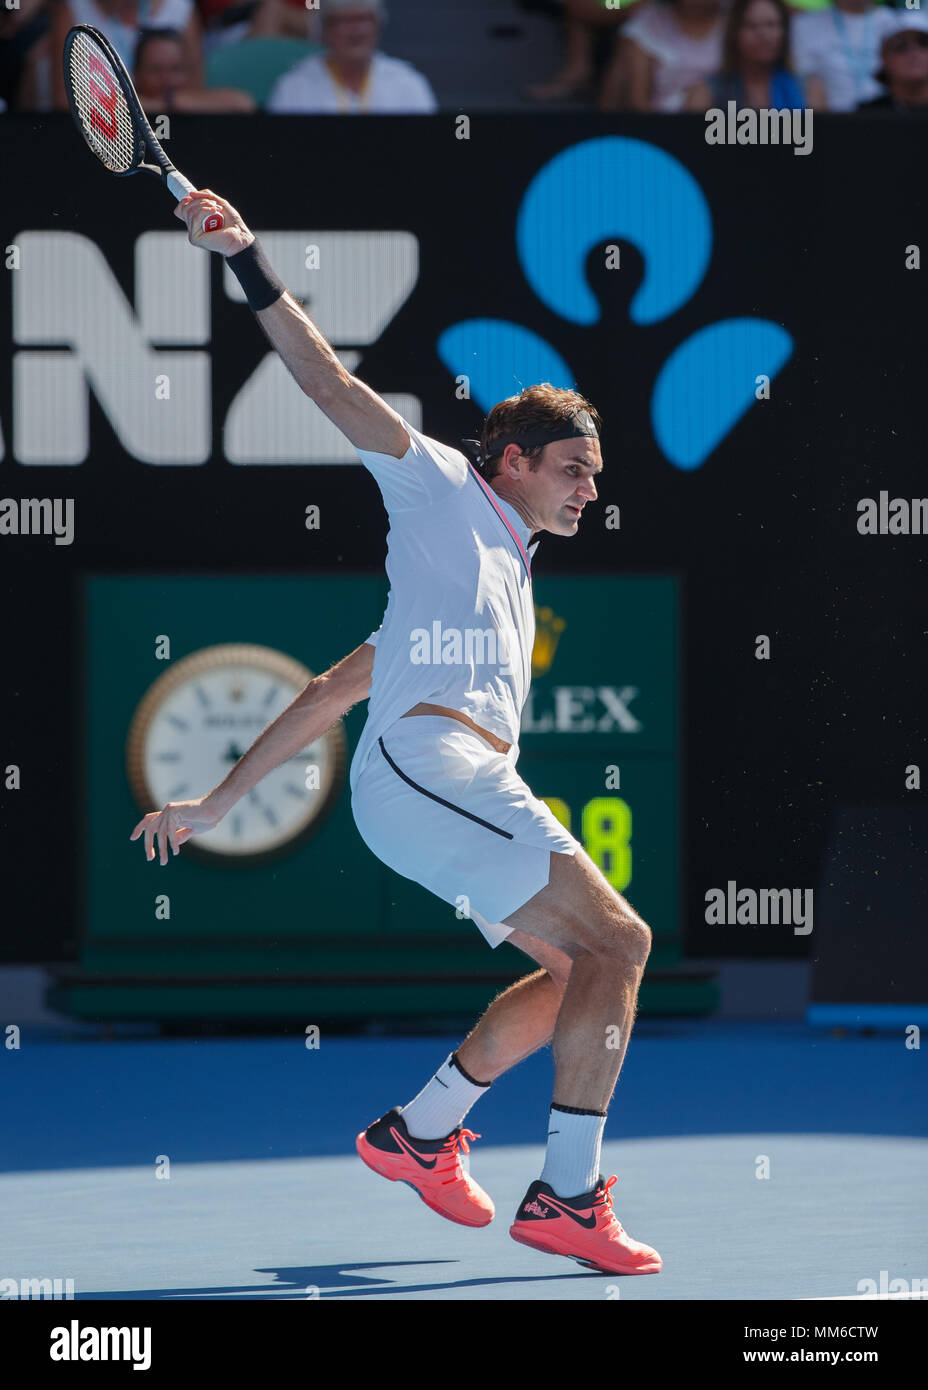 Schweizer Tennisspieler Roger Federer Spielen geschrieben in Australian  Open Tennis Turnier 2018, Melbourne Park, Melbourne, Victoria, Australien  Stockfotografie - Alamy